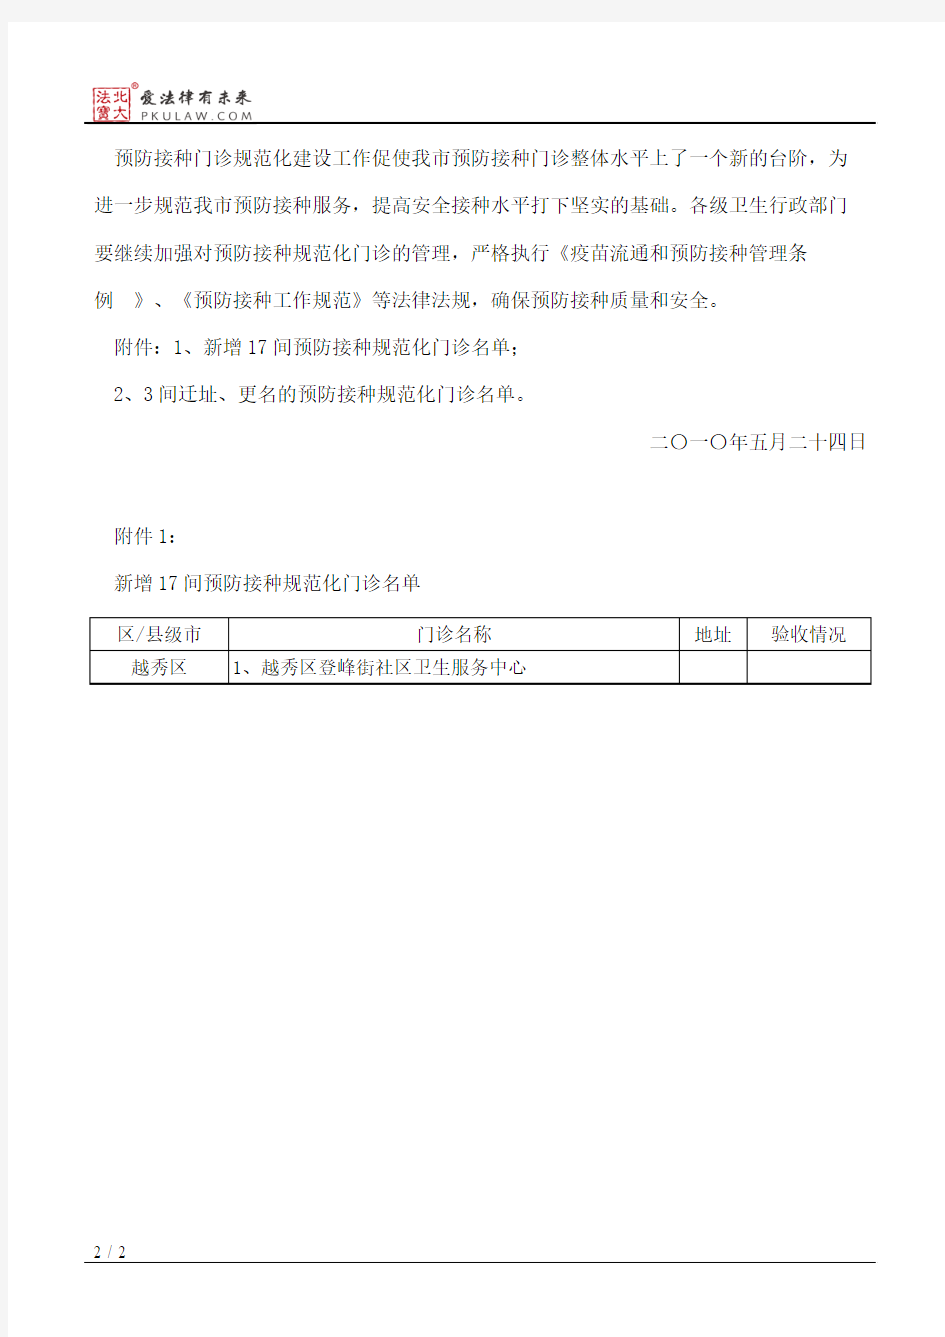 广州市卫生局关于新增登峰街社区卫生服务中心等17个医疗卫生单位